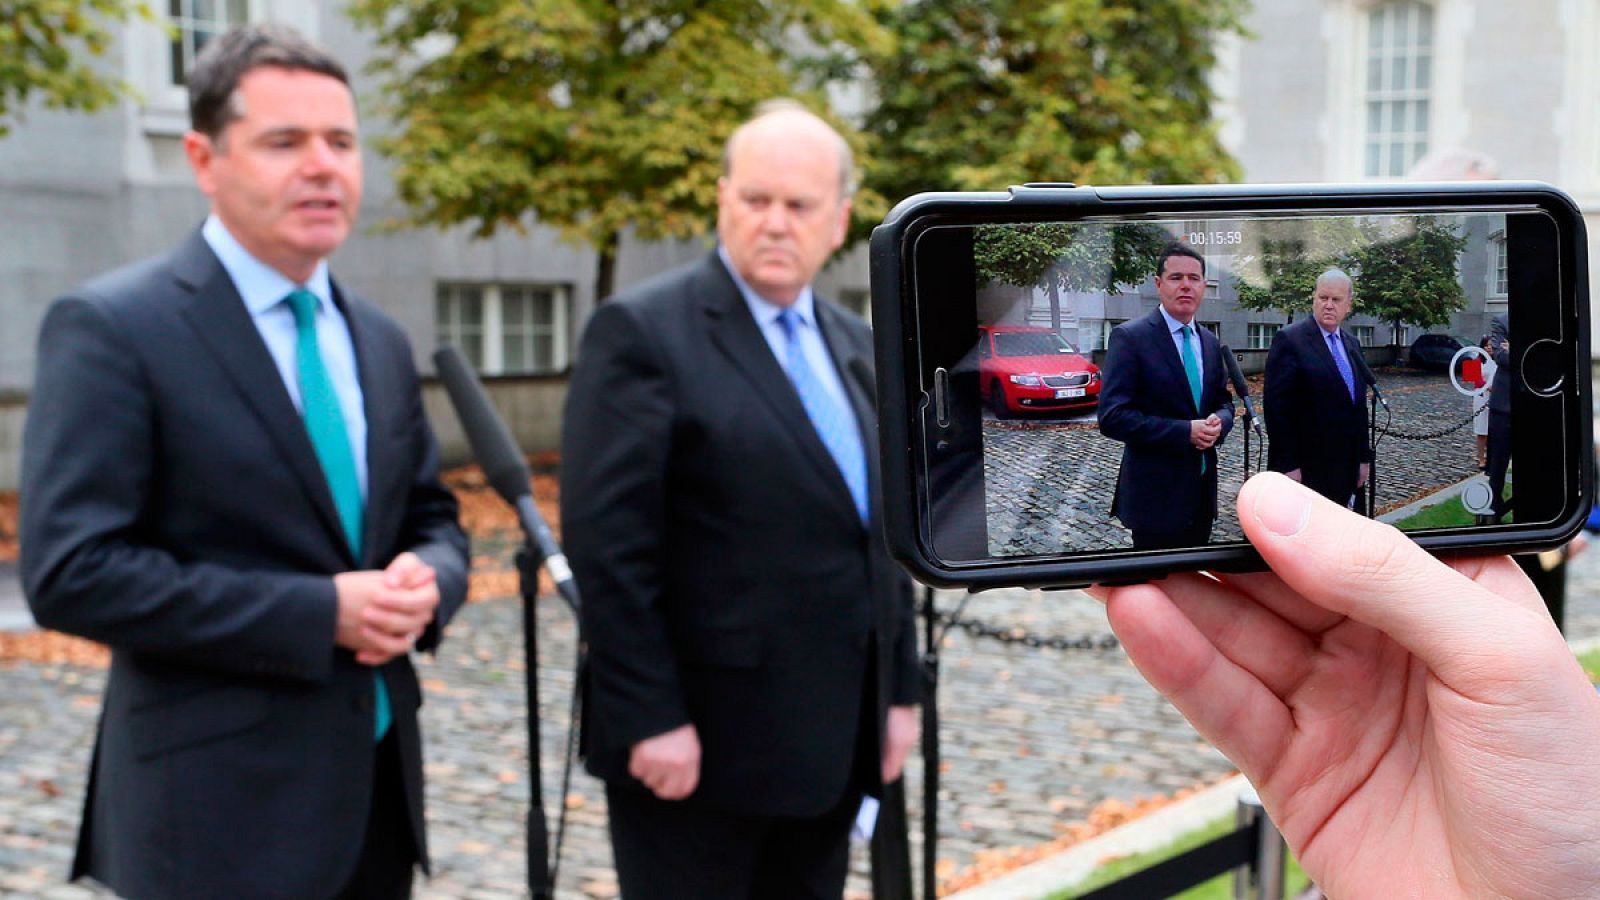 El ministro de Economía de Irlanda, Michael Noonan, y el ministro de Gasto Público, Paschal Donohoe, en rueda de prensa mientras son fotografiados con un iPhone